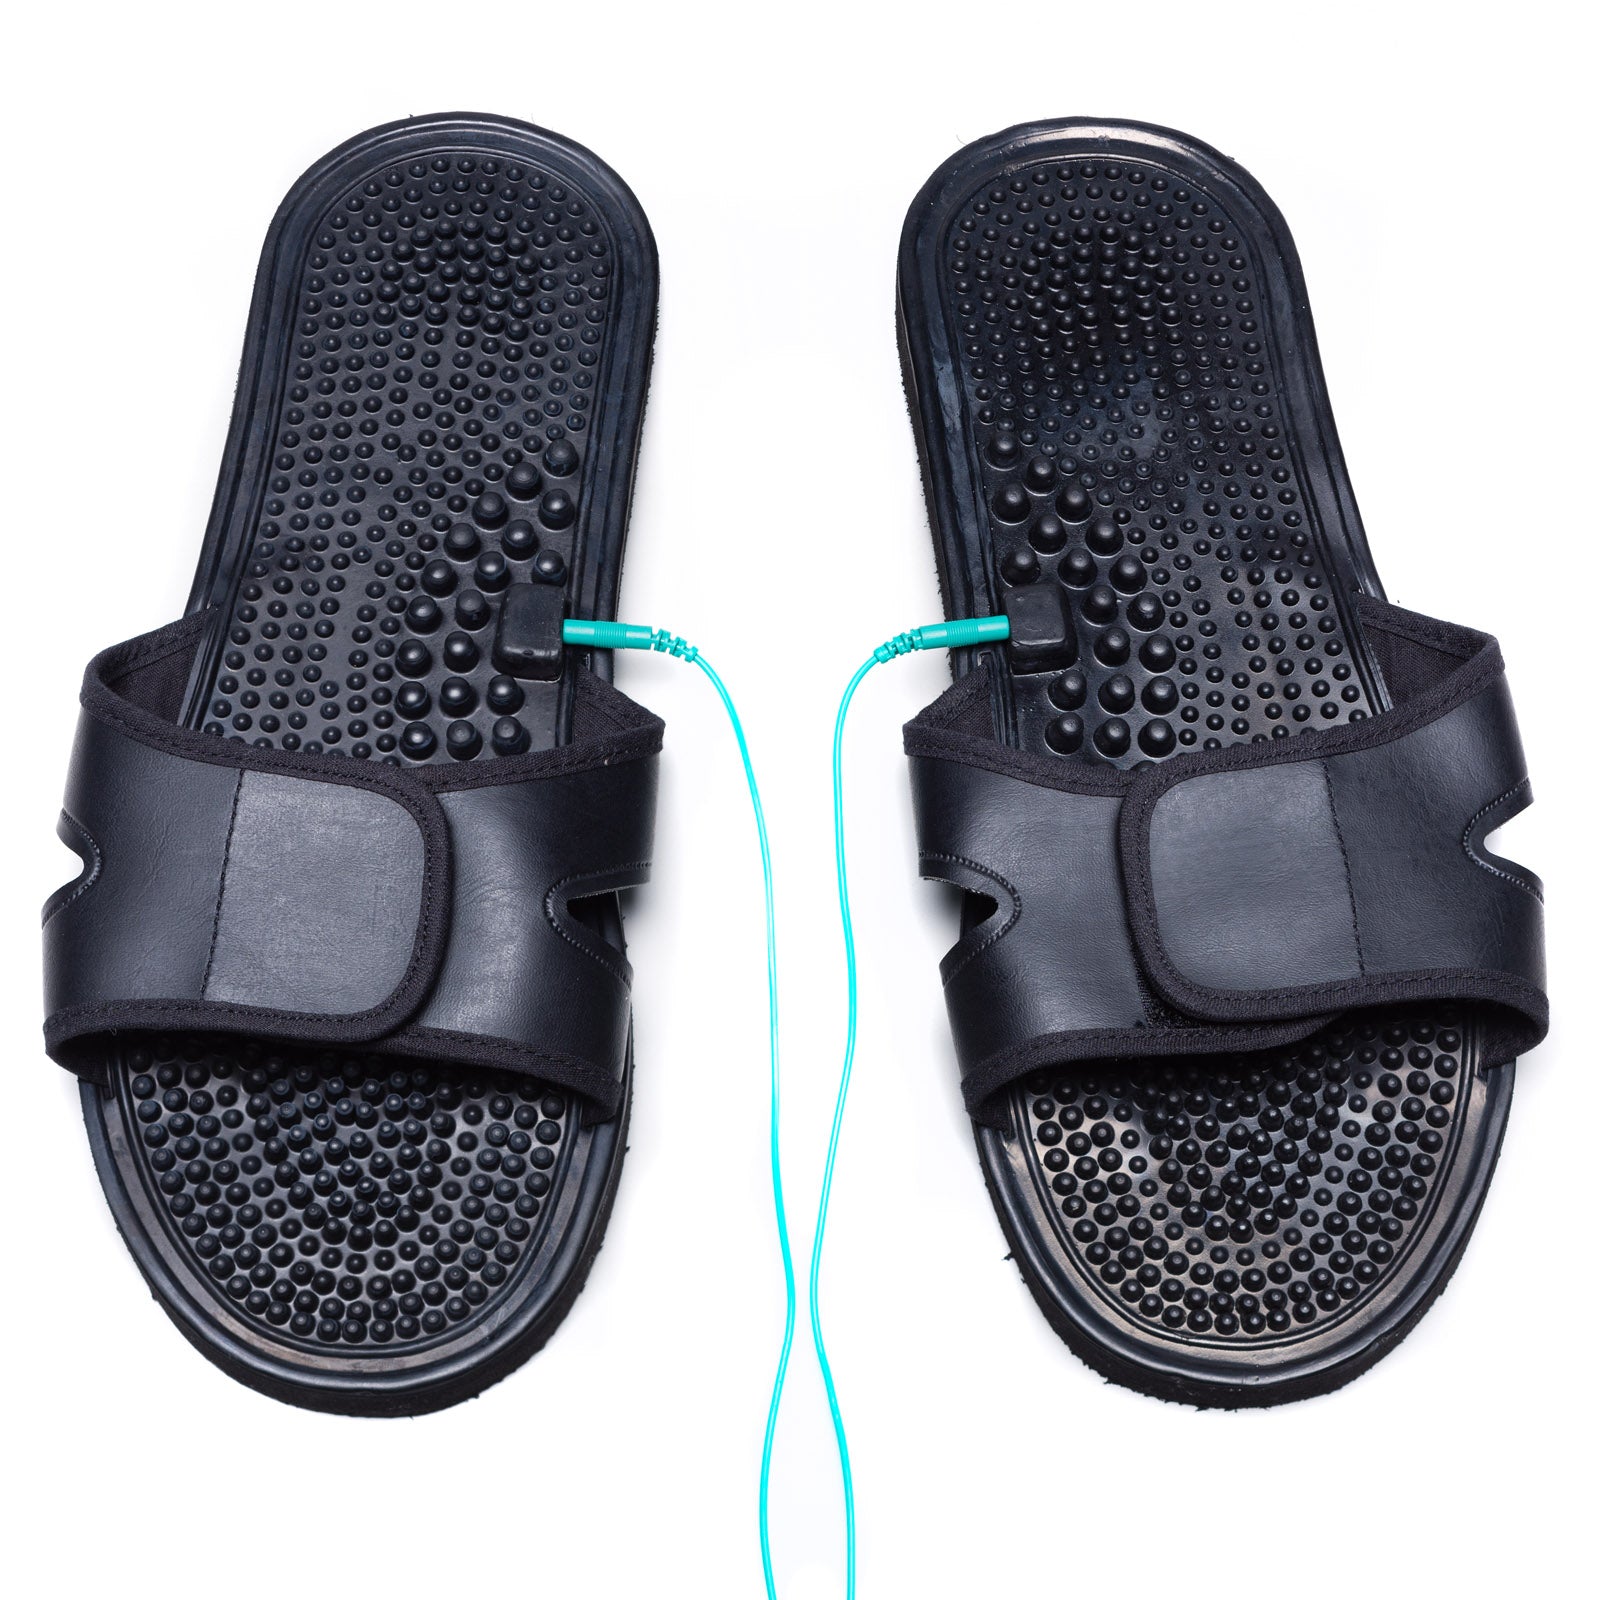 TESMED SLIPPERS - chaussons pour la stimulation du pied, à utiliser en combinaison avec un appareil TESMED. Pendant le traitement, on ressent un agréable massage du pied jusqu'au genou